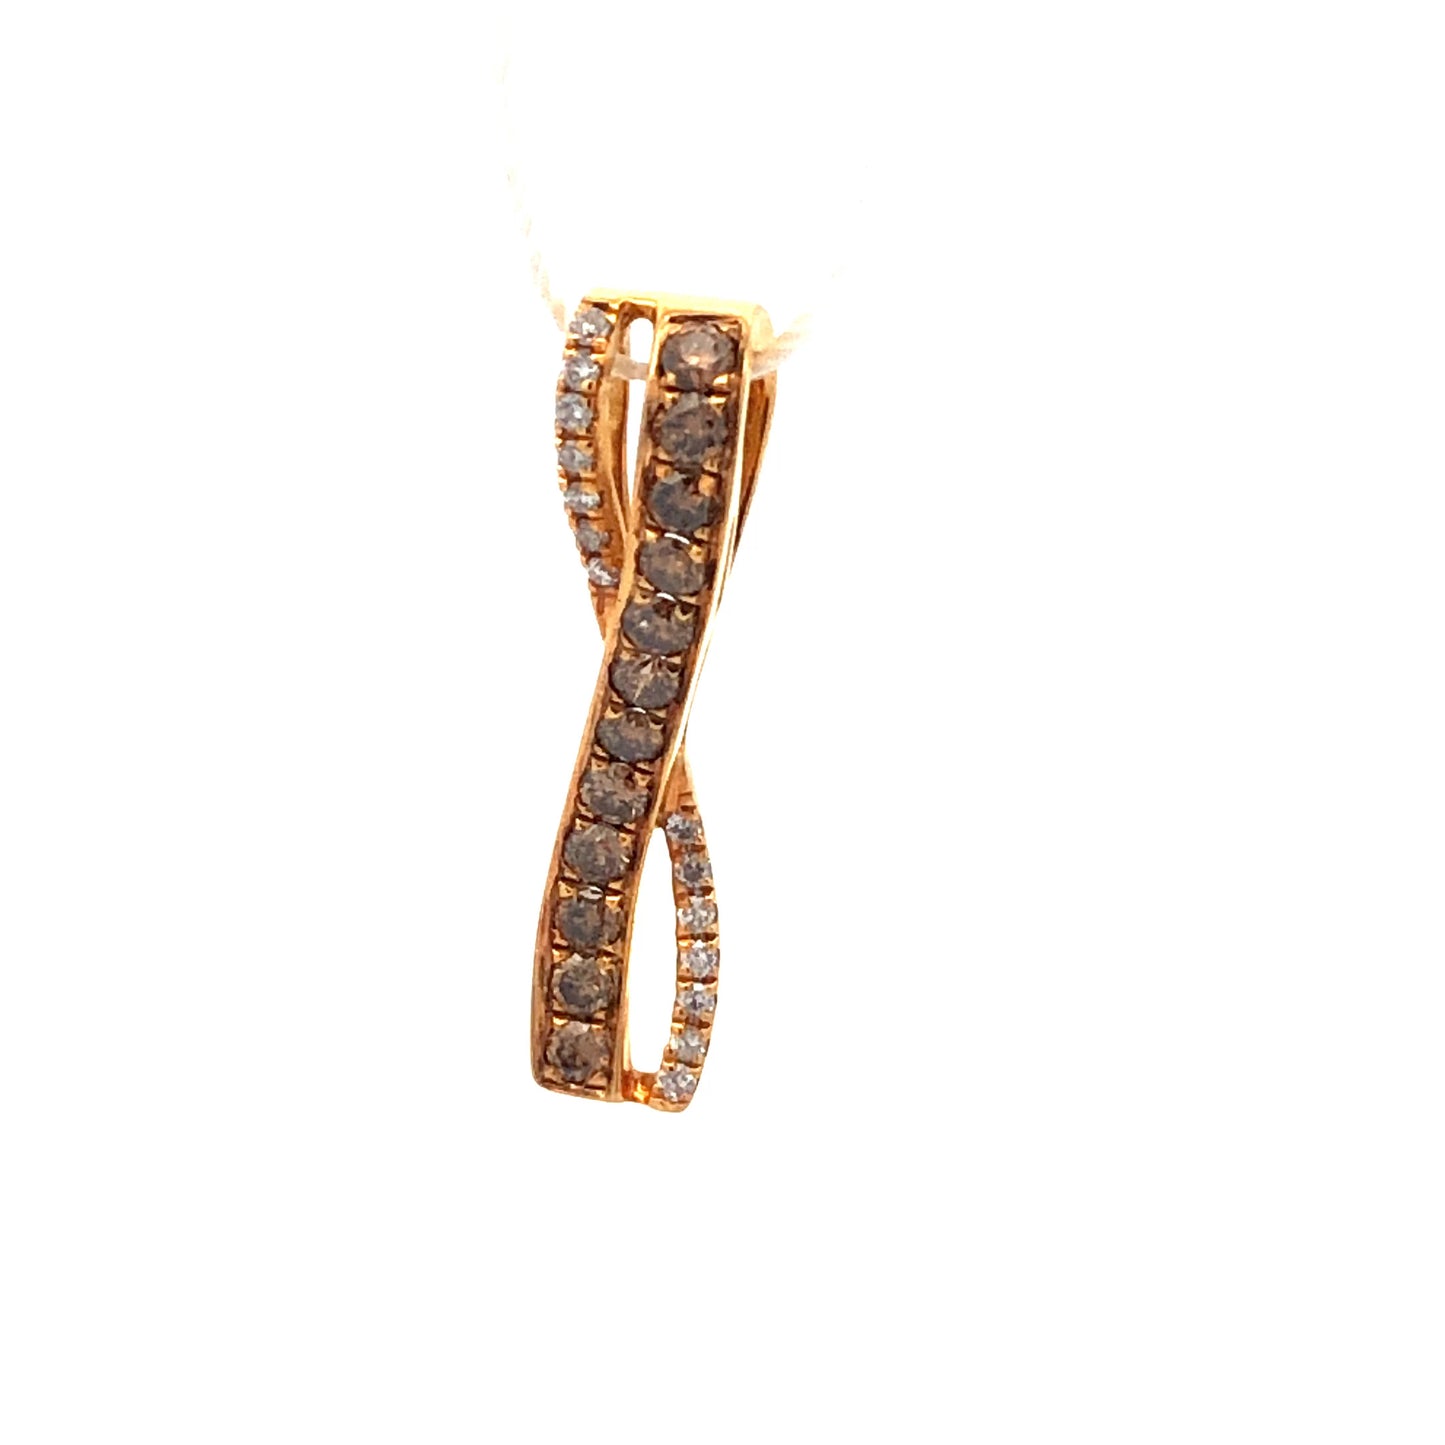 Chocolate Diamond Pendant P11563 - Royal Gems and Jewelry